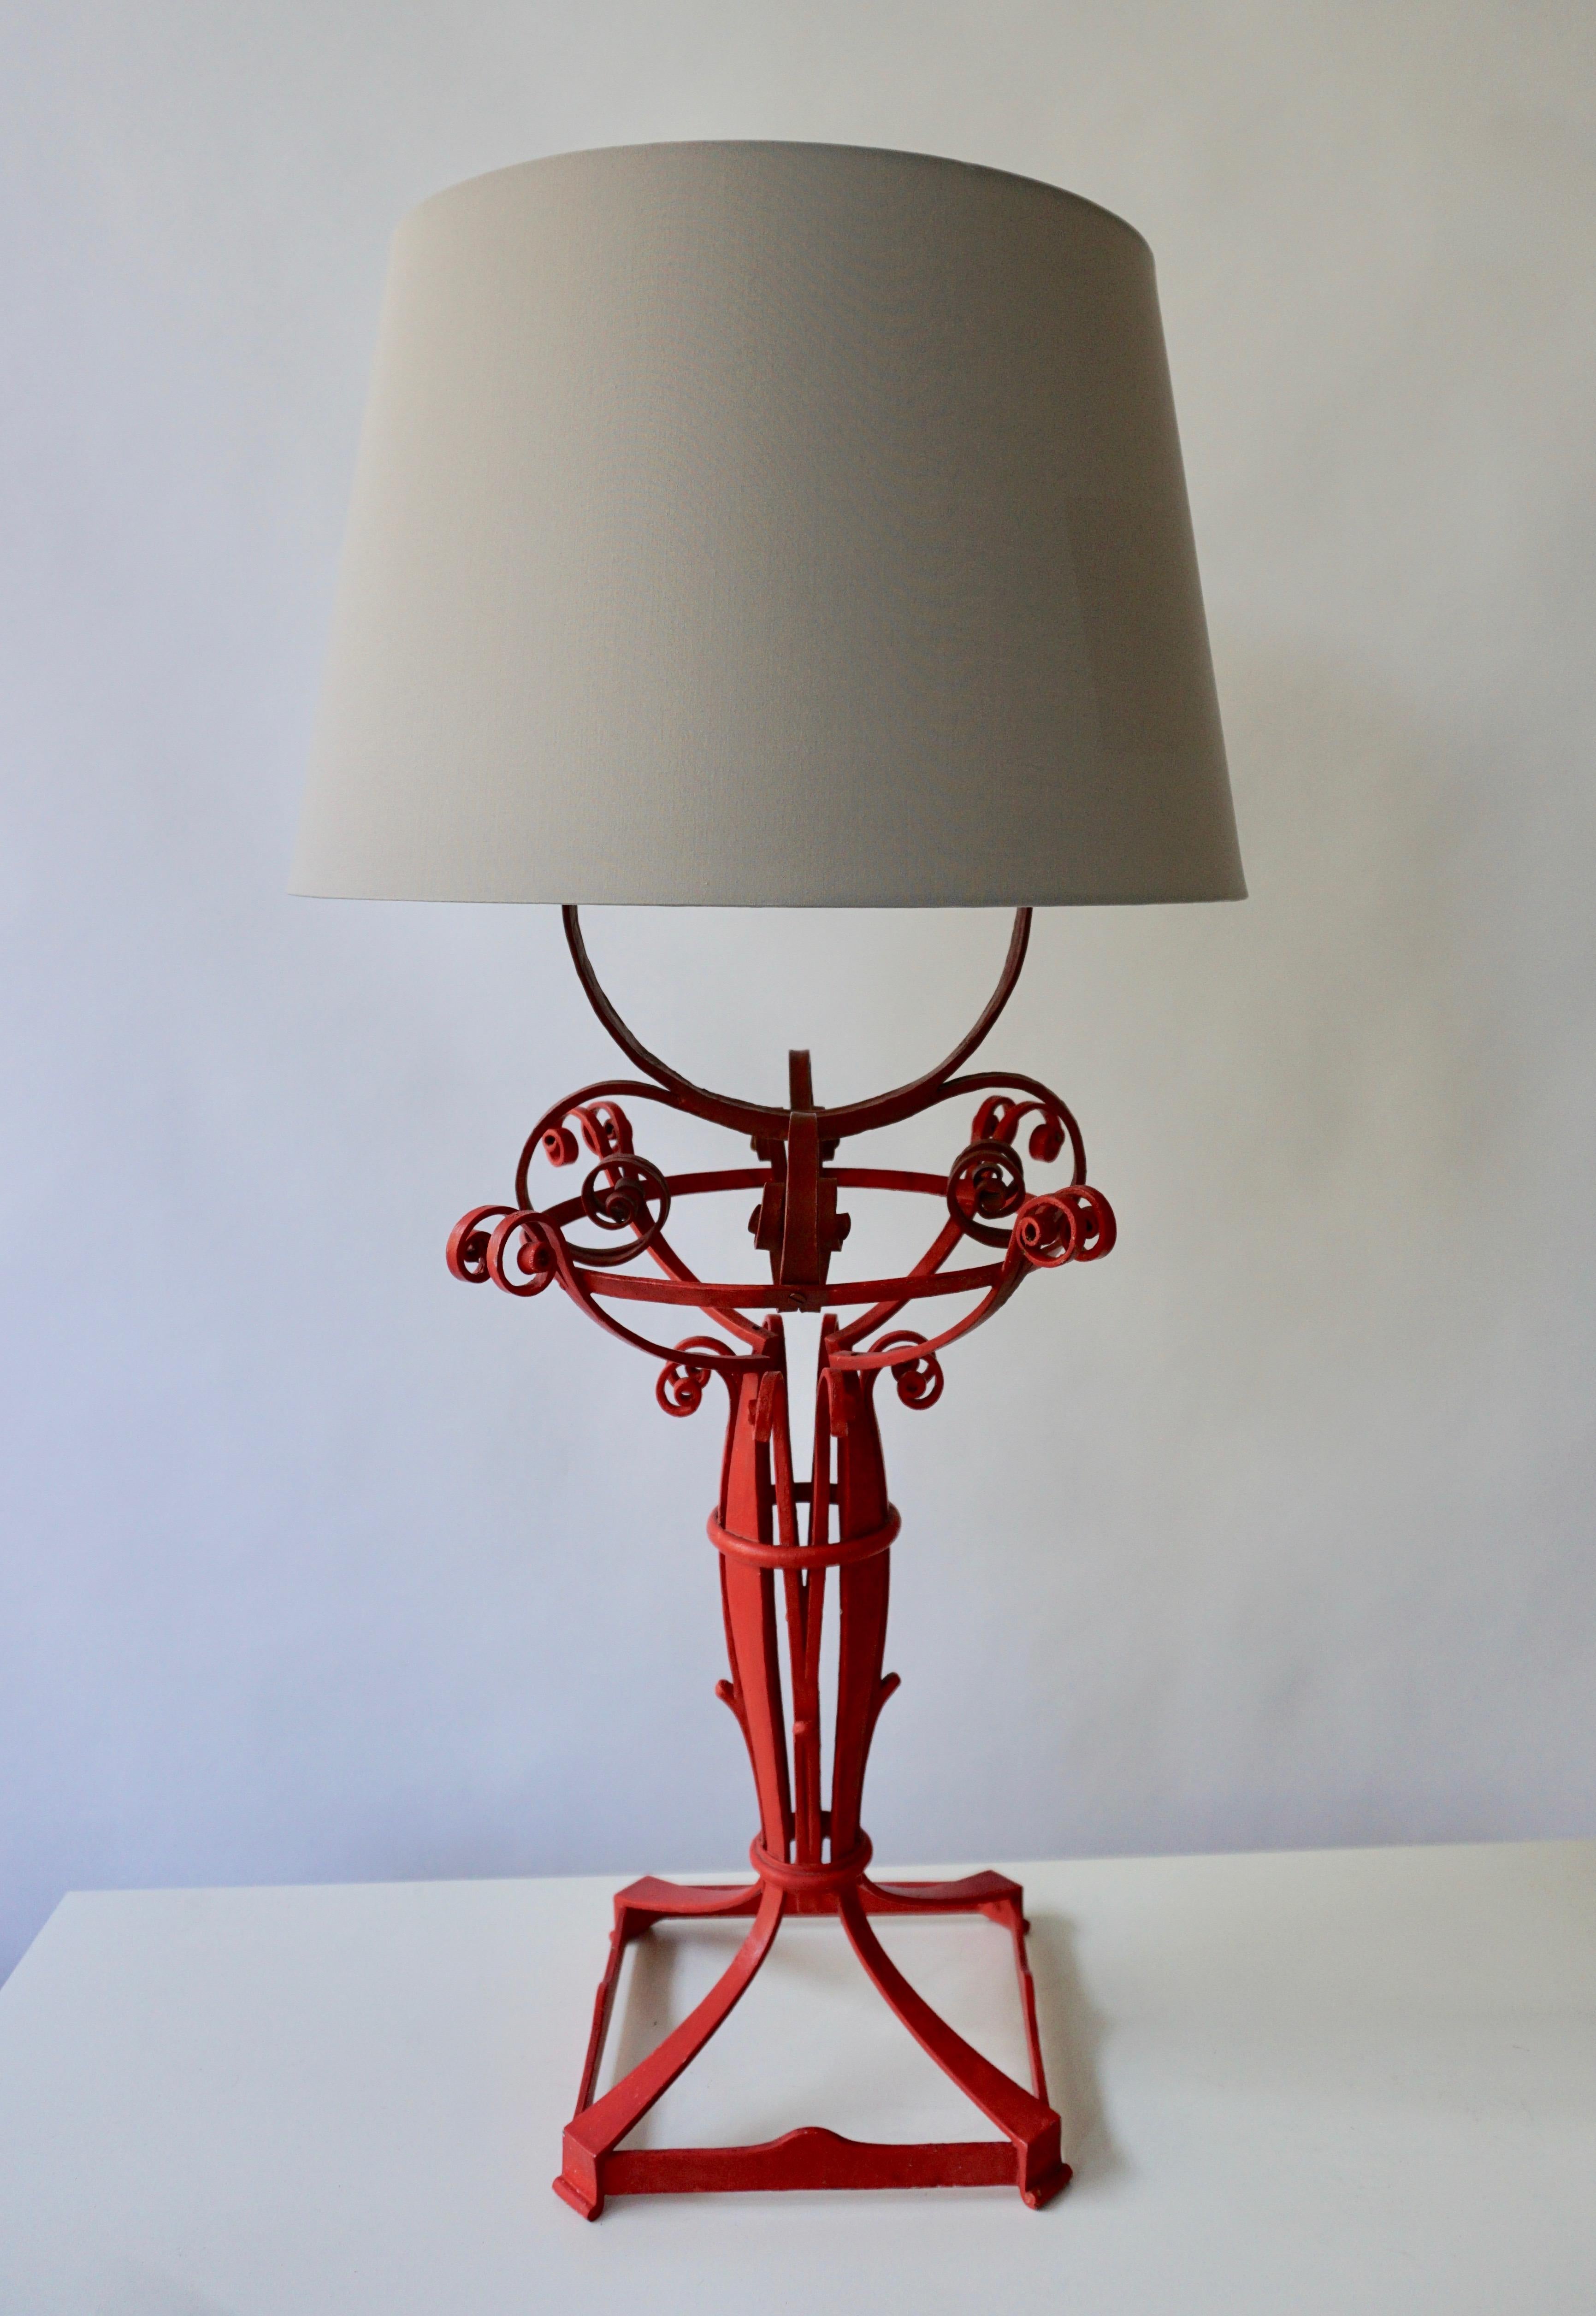 Lampe de table en fer forgé.
Mesures : Largeur 30 cm.
Profondeur 30 cm.
Hauteur 88 cm.
L'abat-jour n'est pas inclus dans le prix.